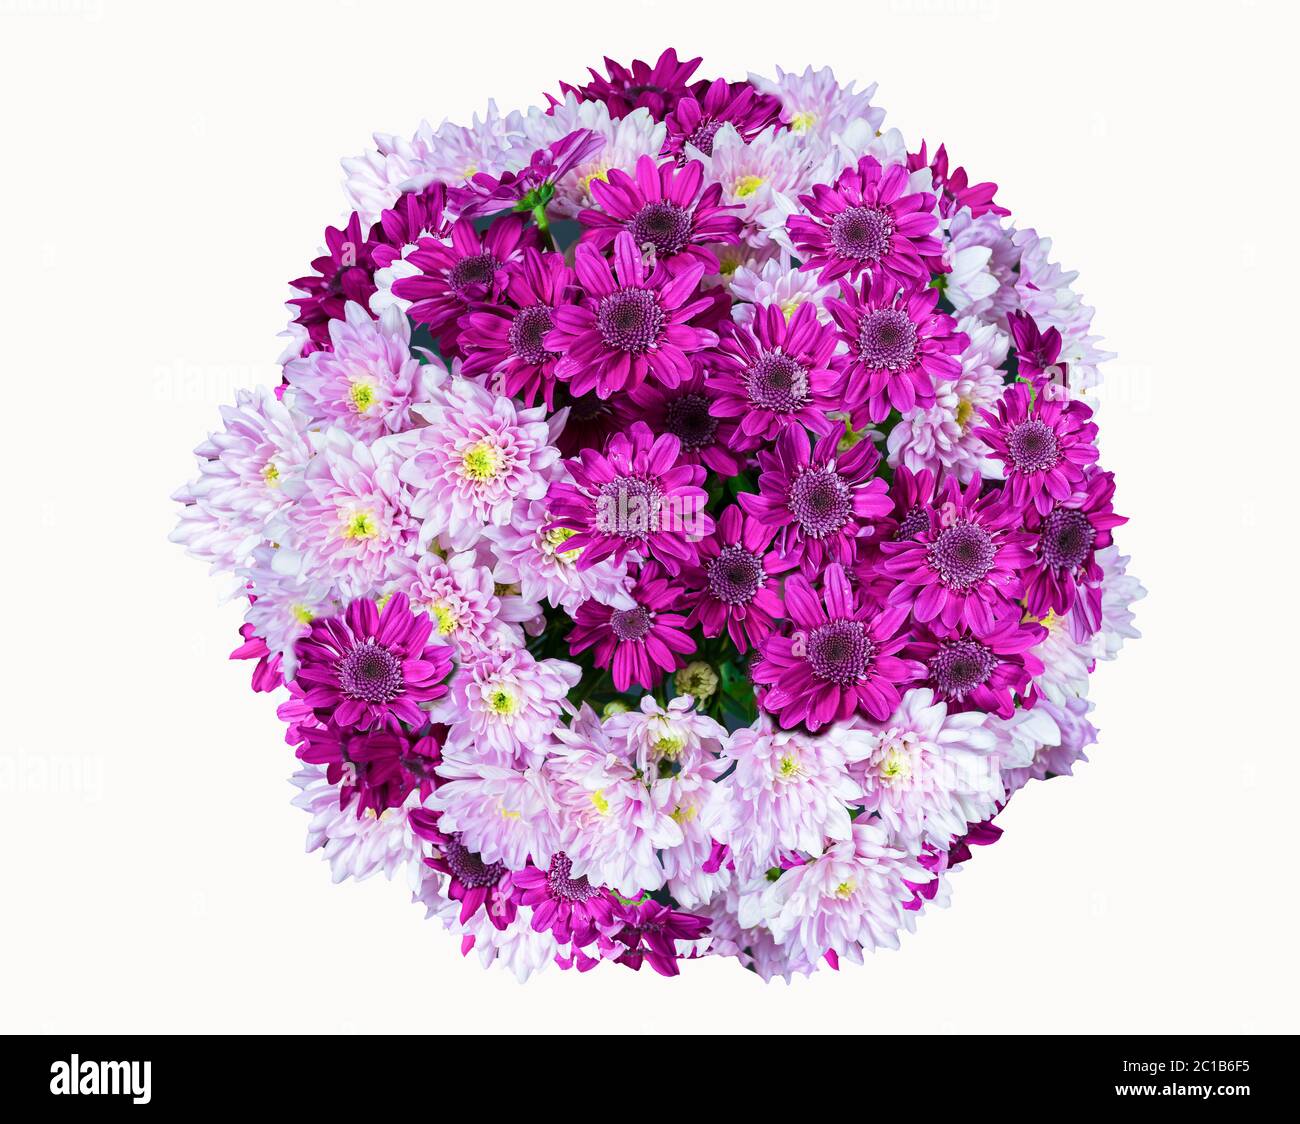 au-dessus de la vue bouquet de fleurs, bouquet de chrysanthème isolé sur fond blanc Banque D'Images